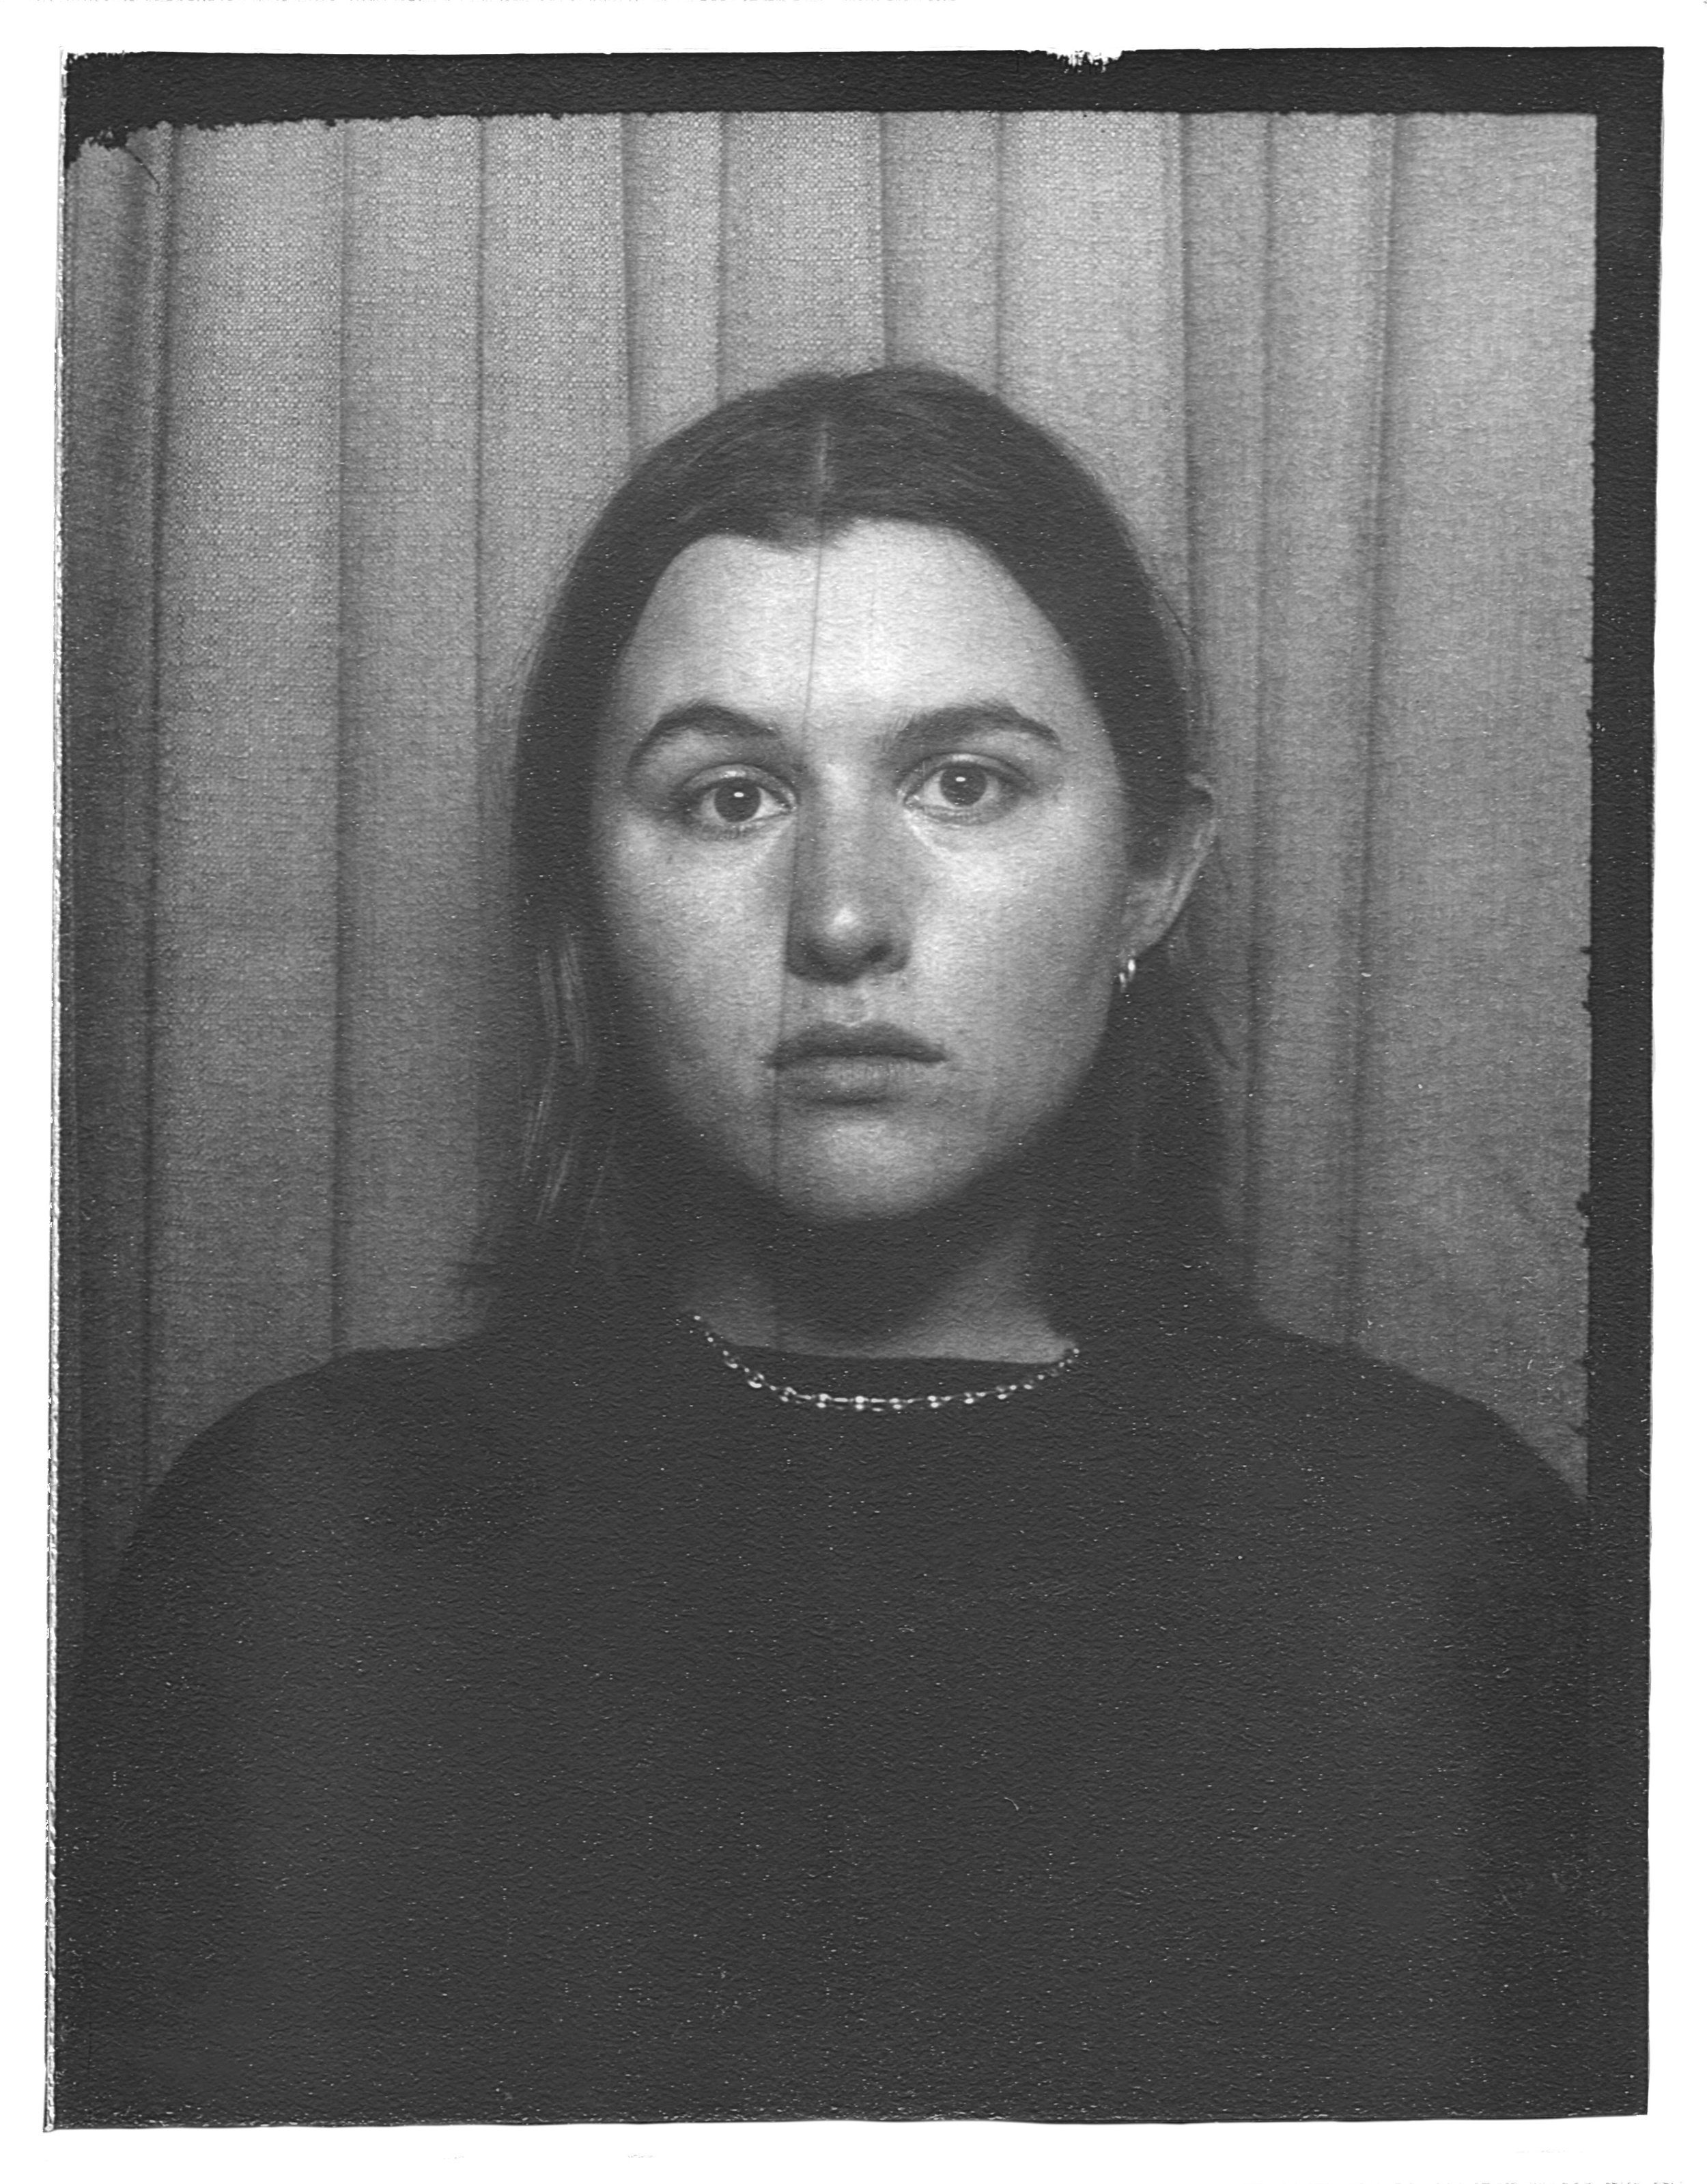 Self-Portrait, Natasha Lehner (2022)